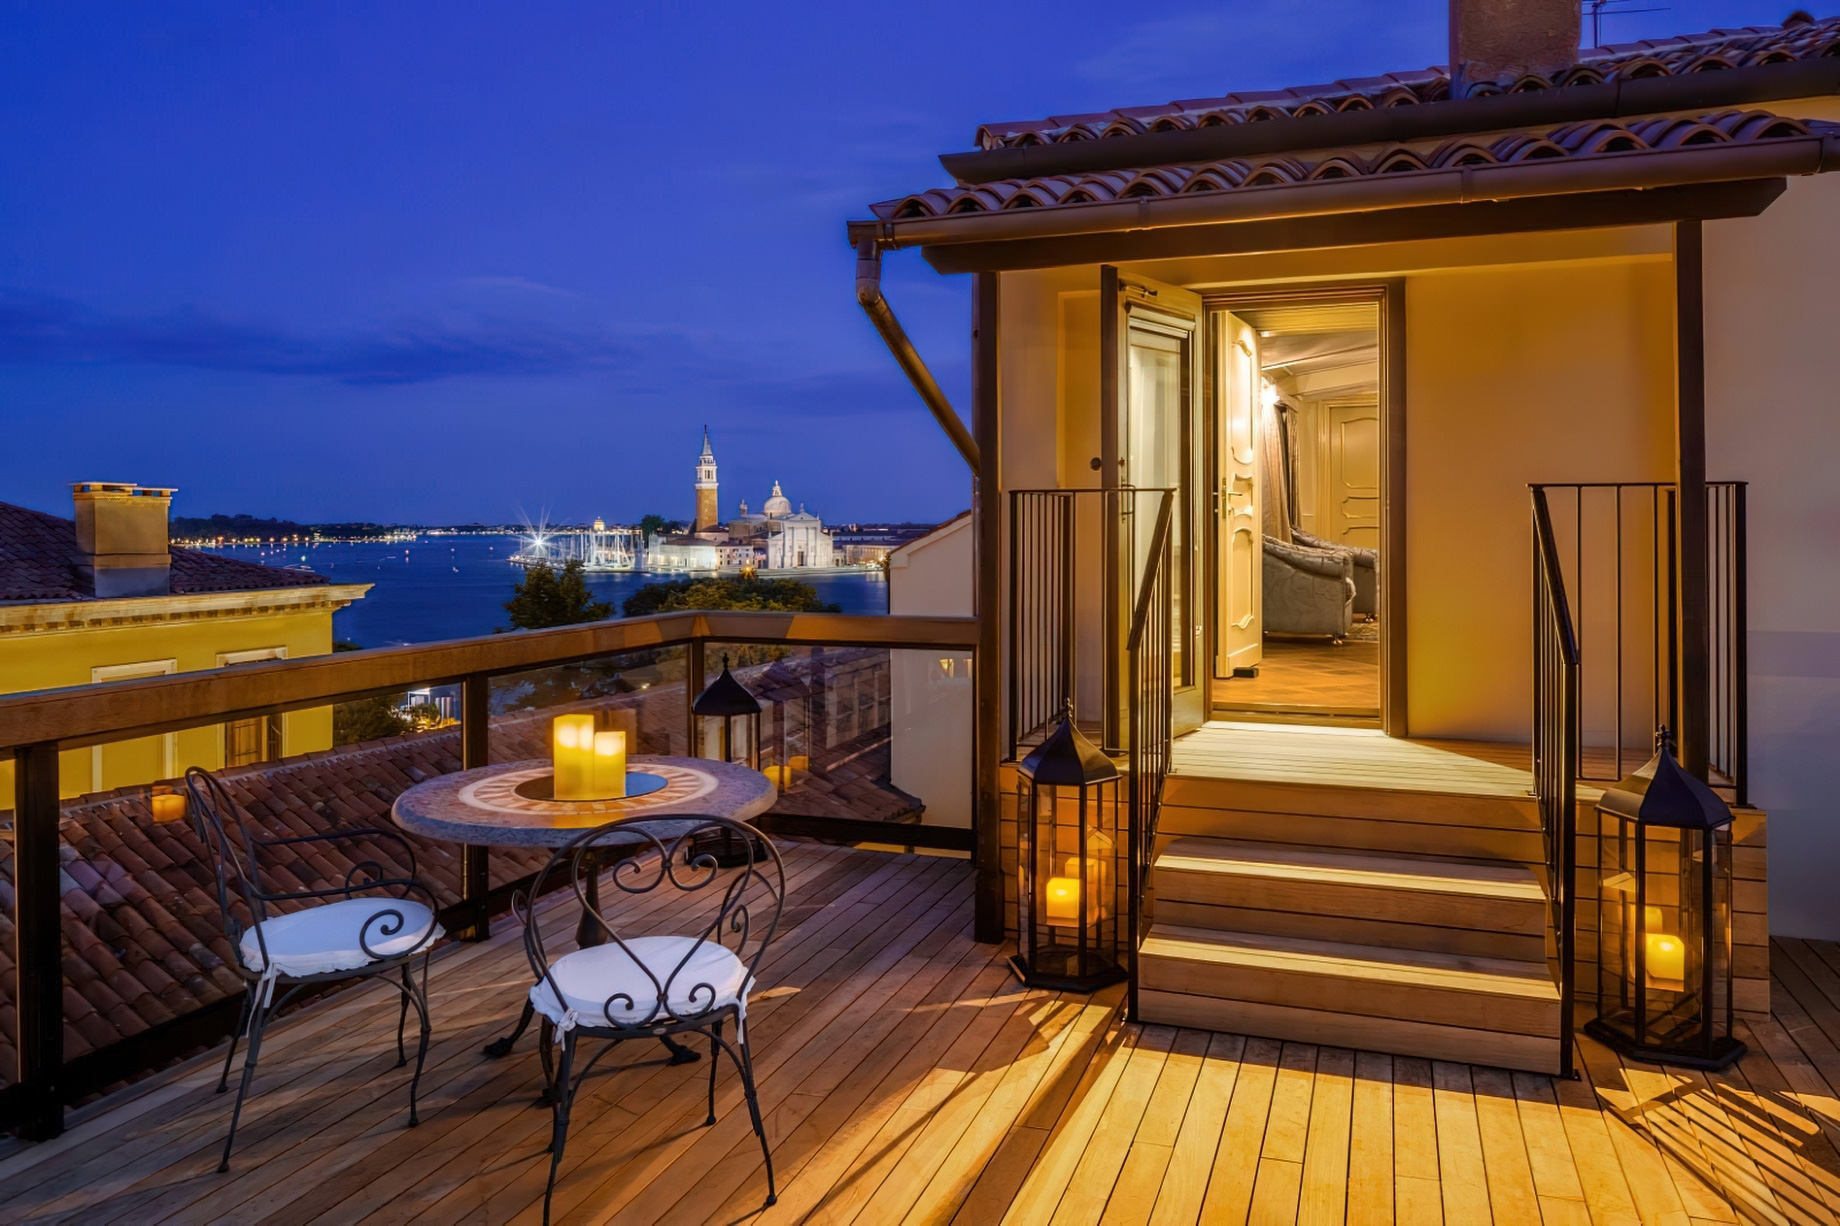 Baglioni Hotel Luna, Venezia – Venice, Italy – Terrace Night View